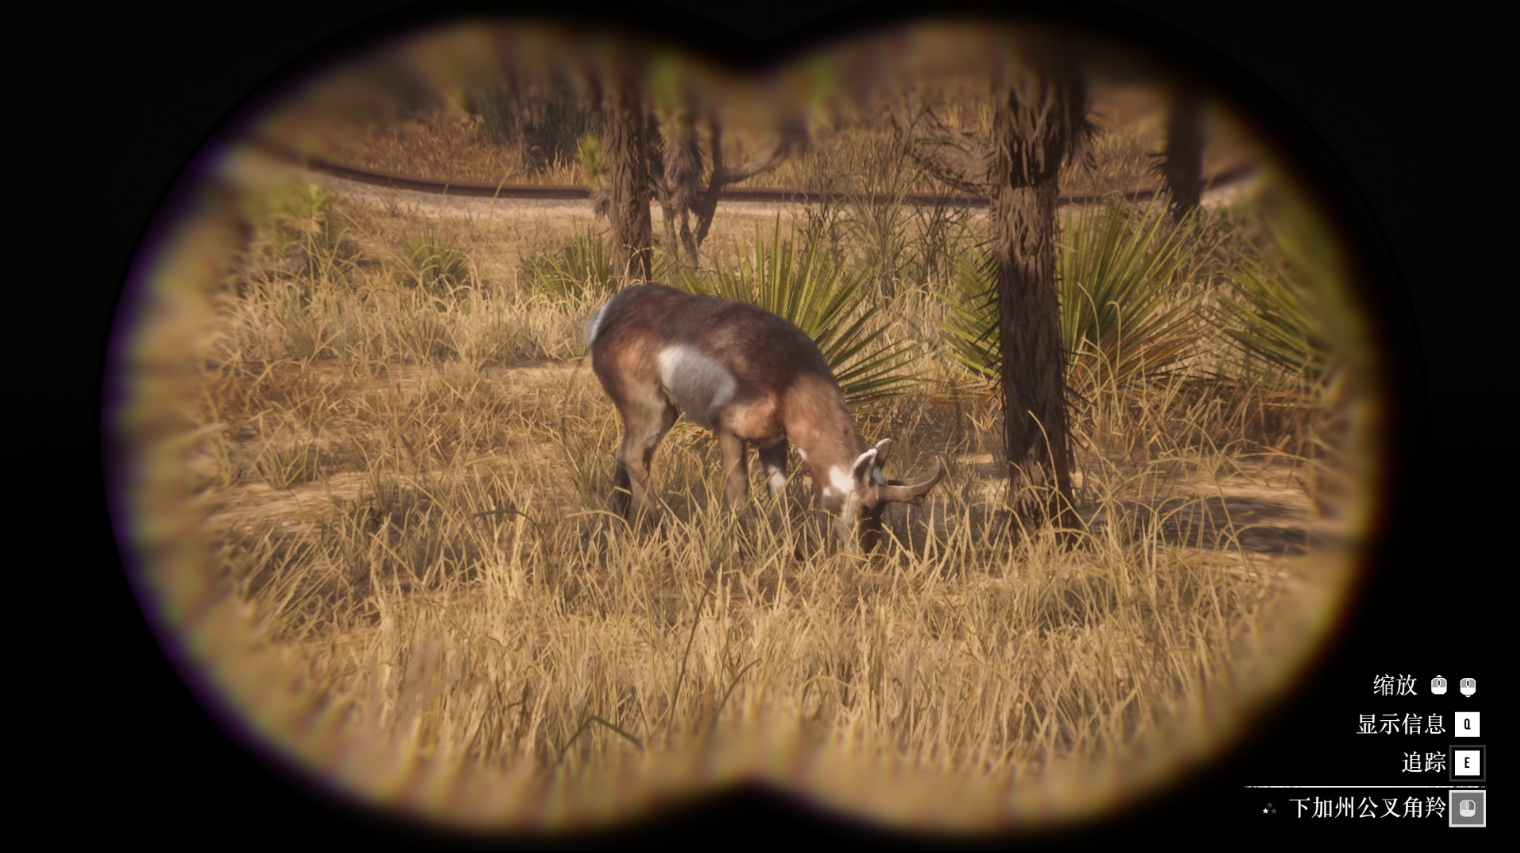 《荒野大镖客2》动物下加州公叉角羚在哪里找